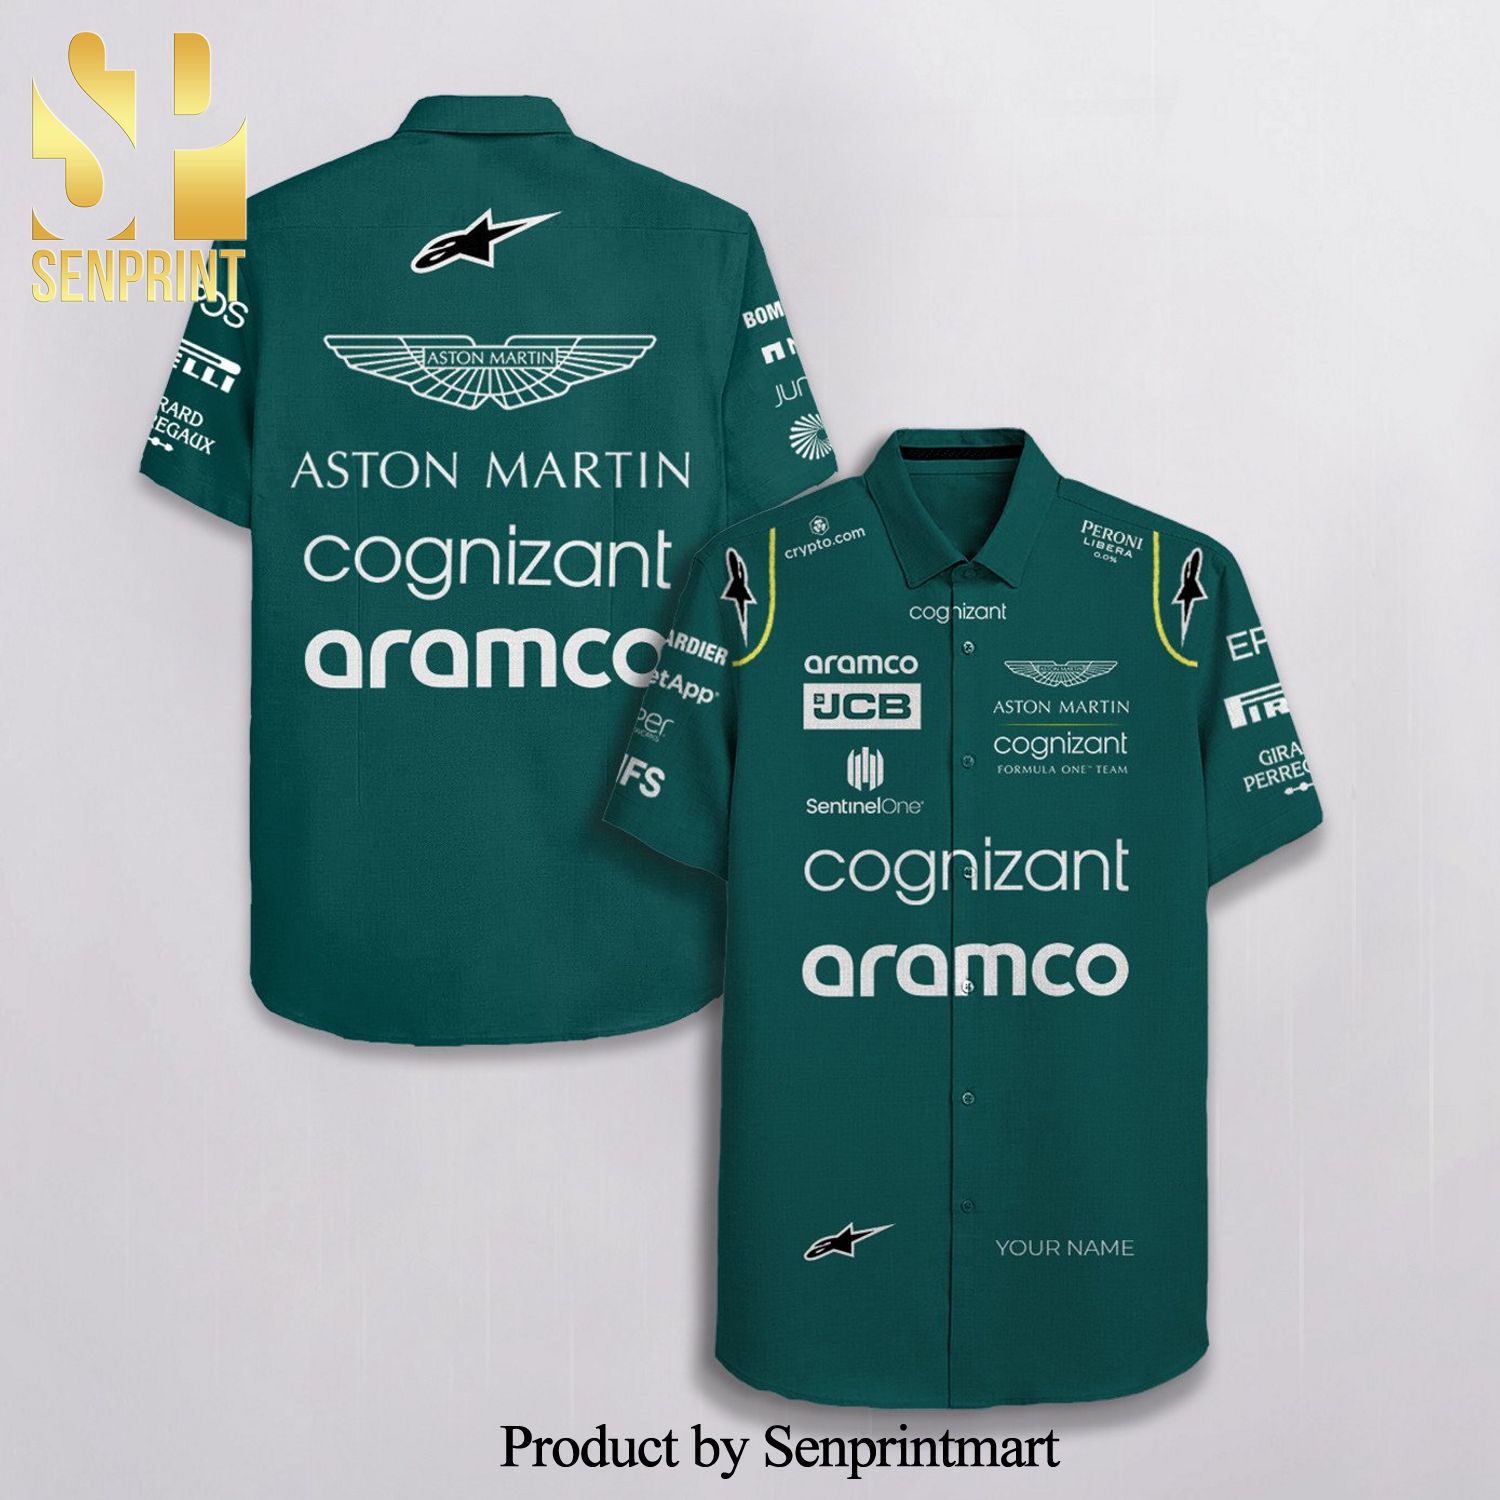 Personalized Aston Martin F1 Team Racing Cognizant Aramco Jcb Alpinestars Full Printing Hawaiian Shirt